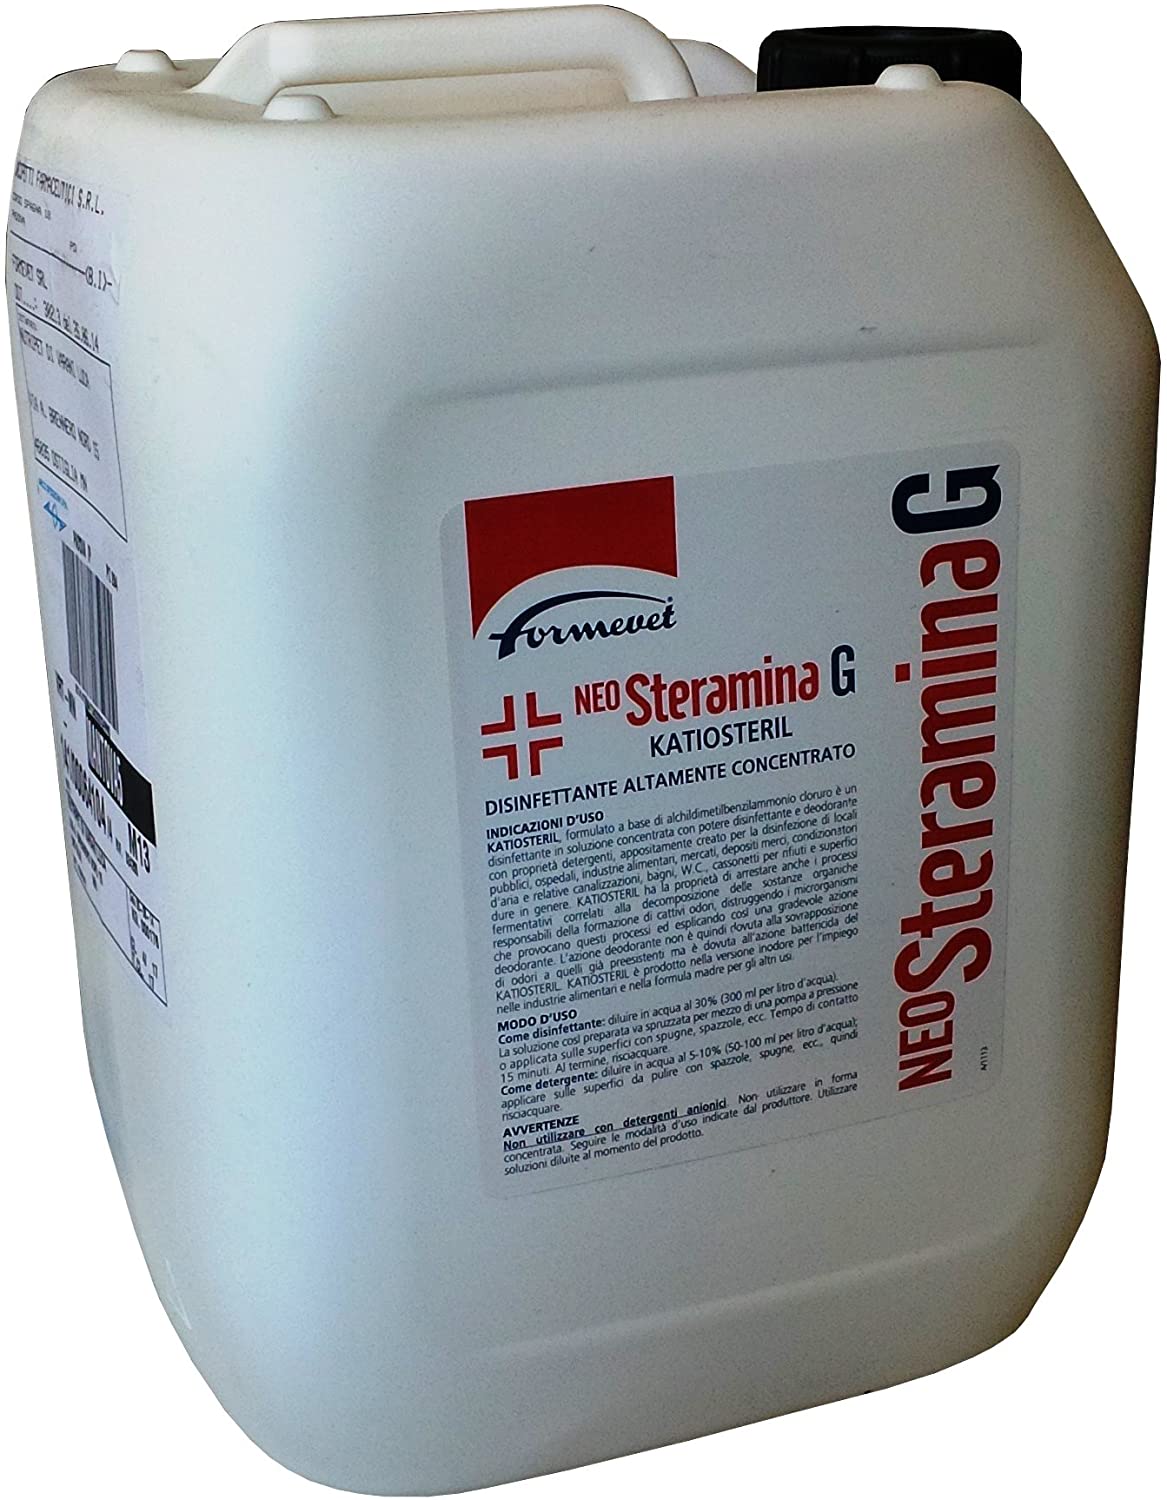 NEO STERAMINA G KATIOSTERIL (Tanica 10 L) - Disinfettante altamente concentrato